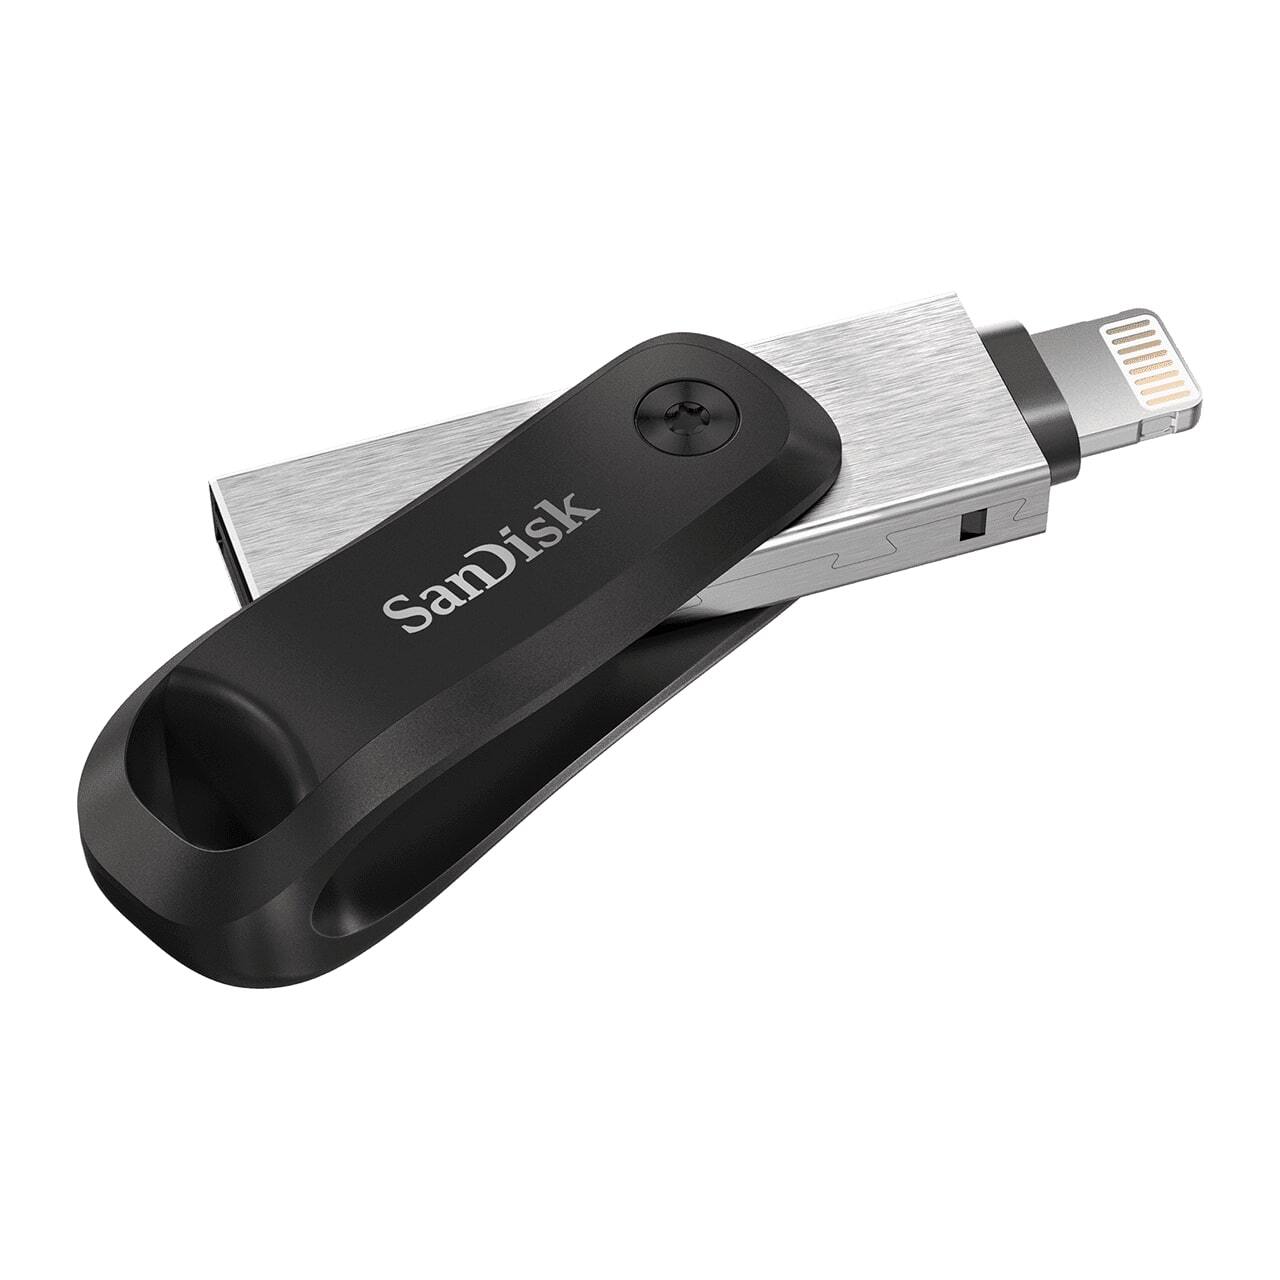  Накопичувач USB SANDISK 64GB iXpand Go USB 3.0/Lightning Apple фото